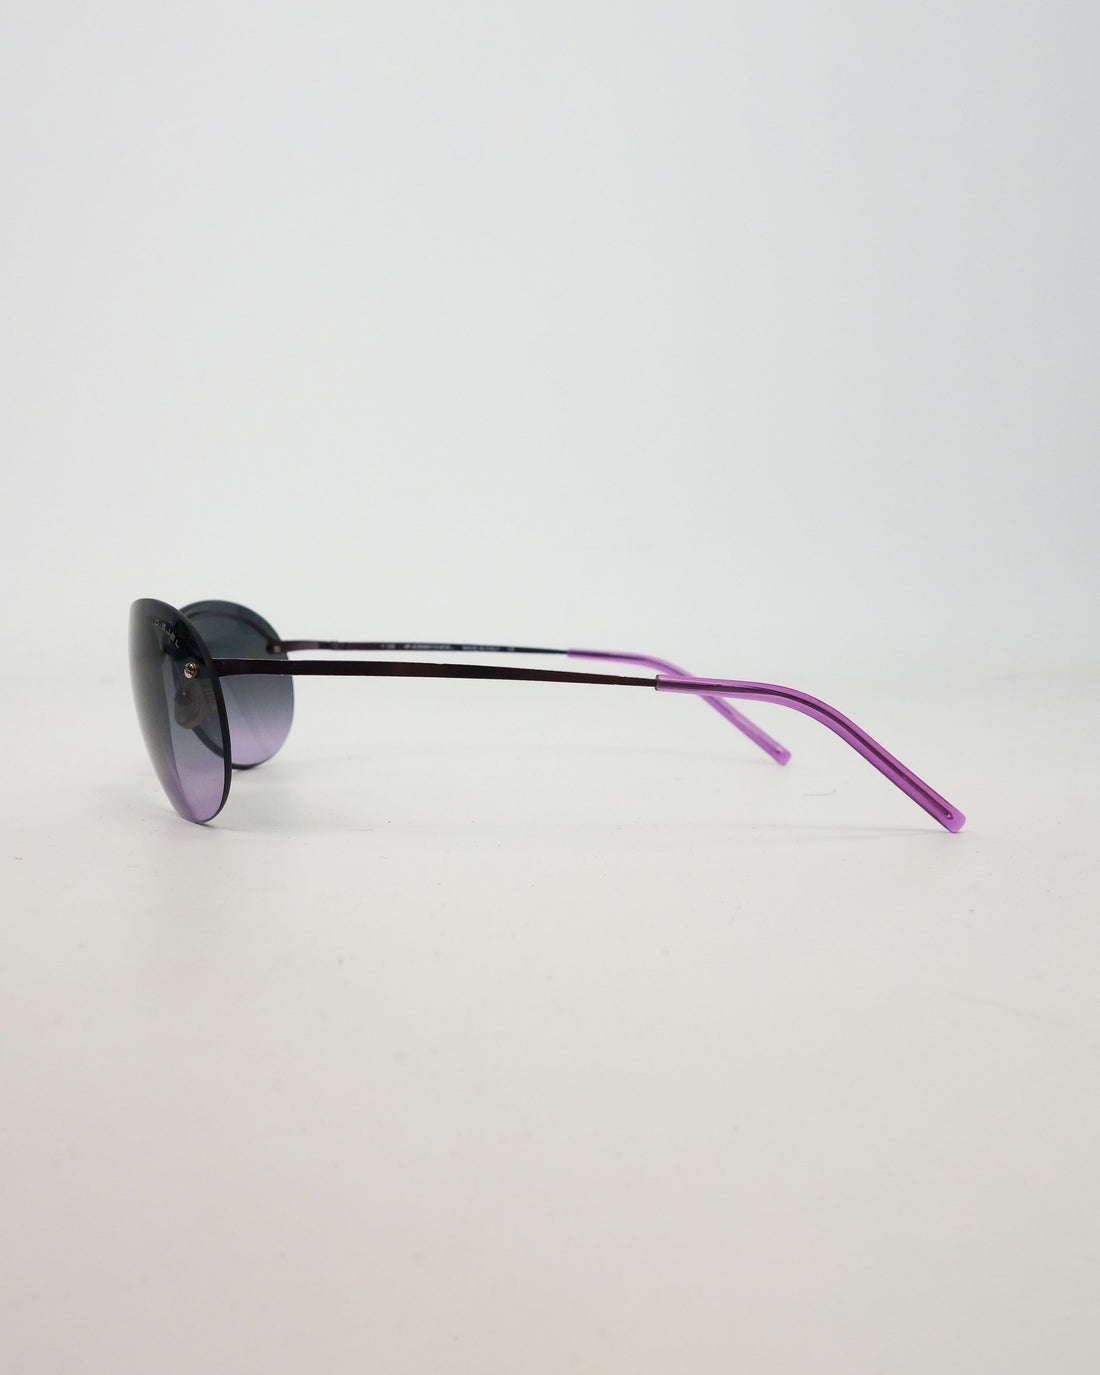 Diesel Industrial Metallic Sunglasses 2000's